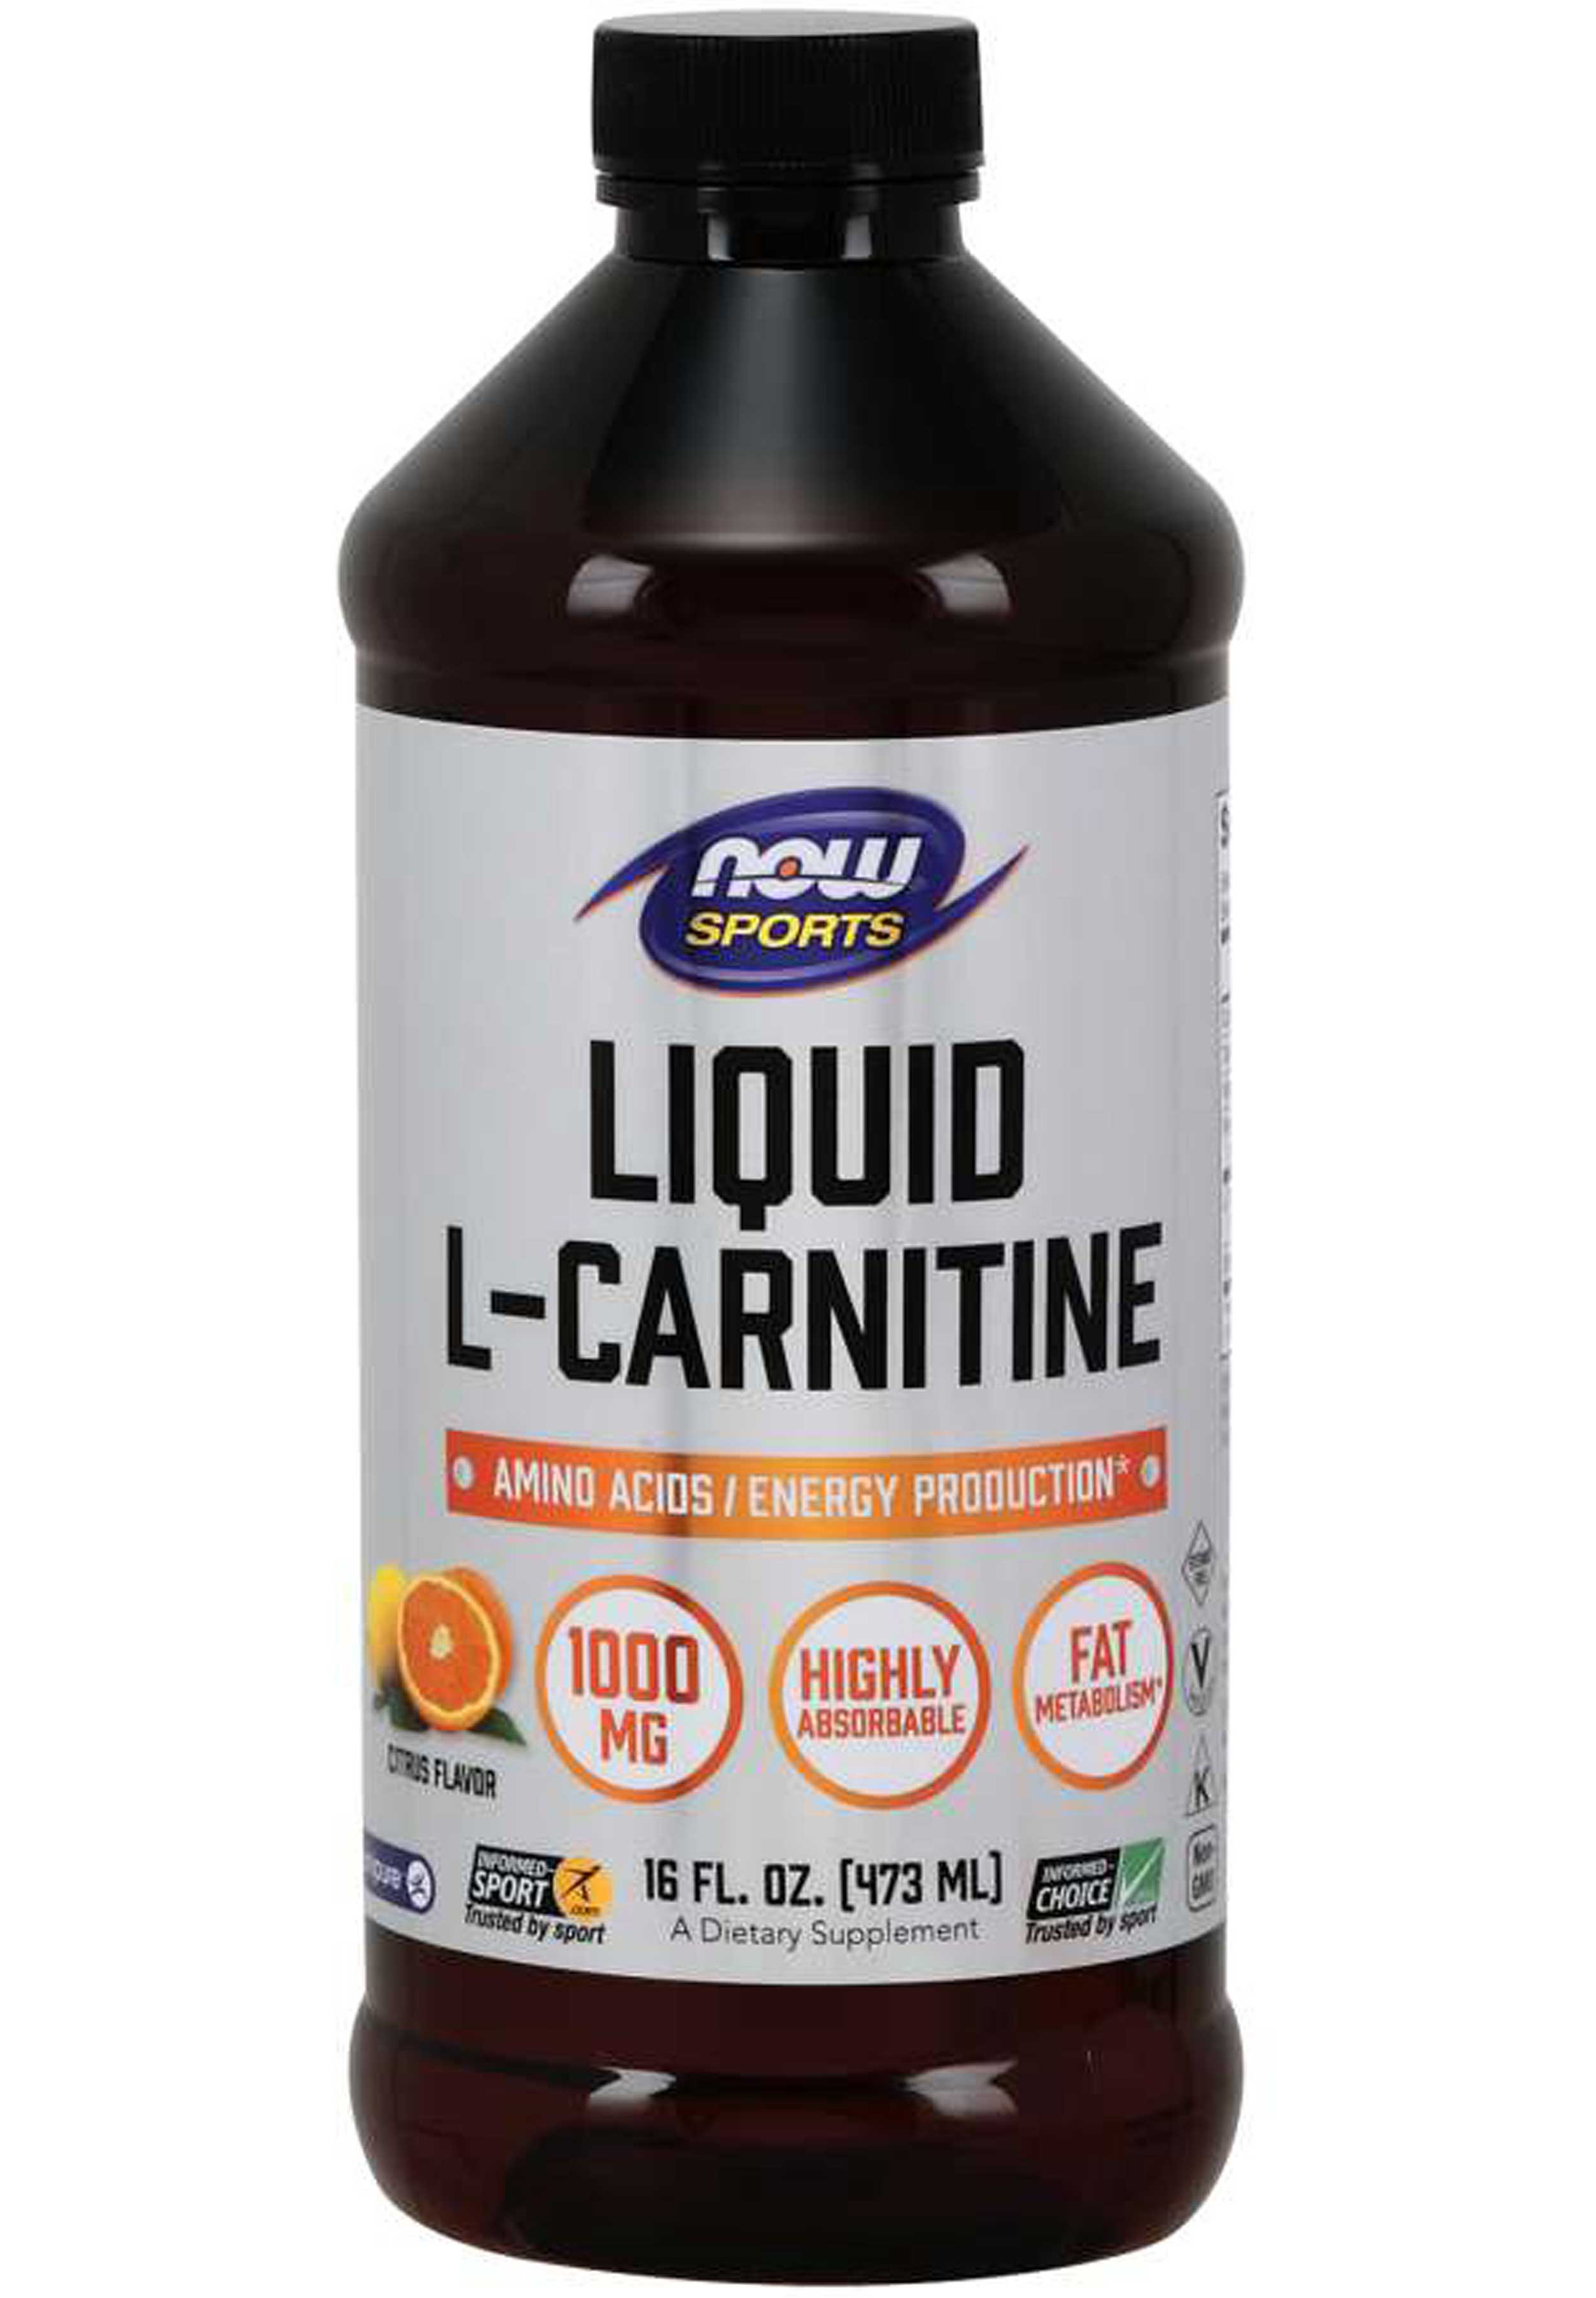 NOW Sports Liquid L-Carnitine 1000 mg